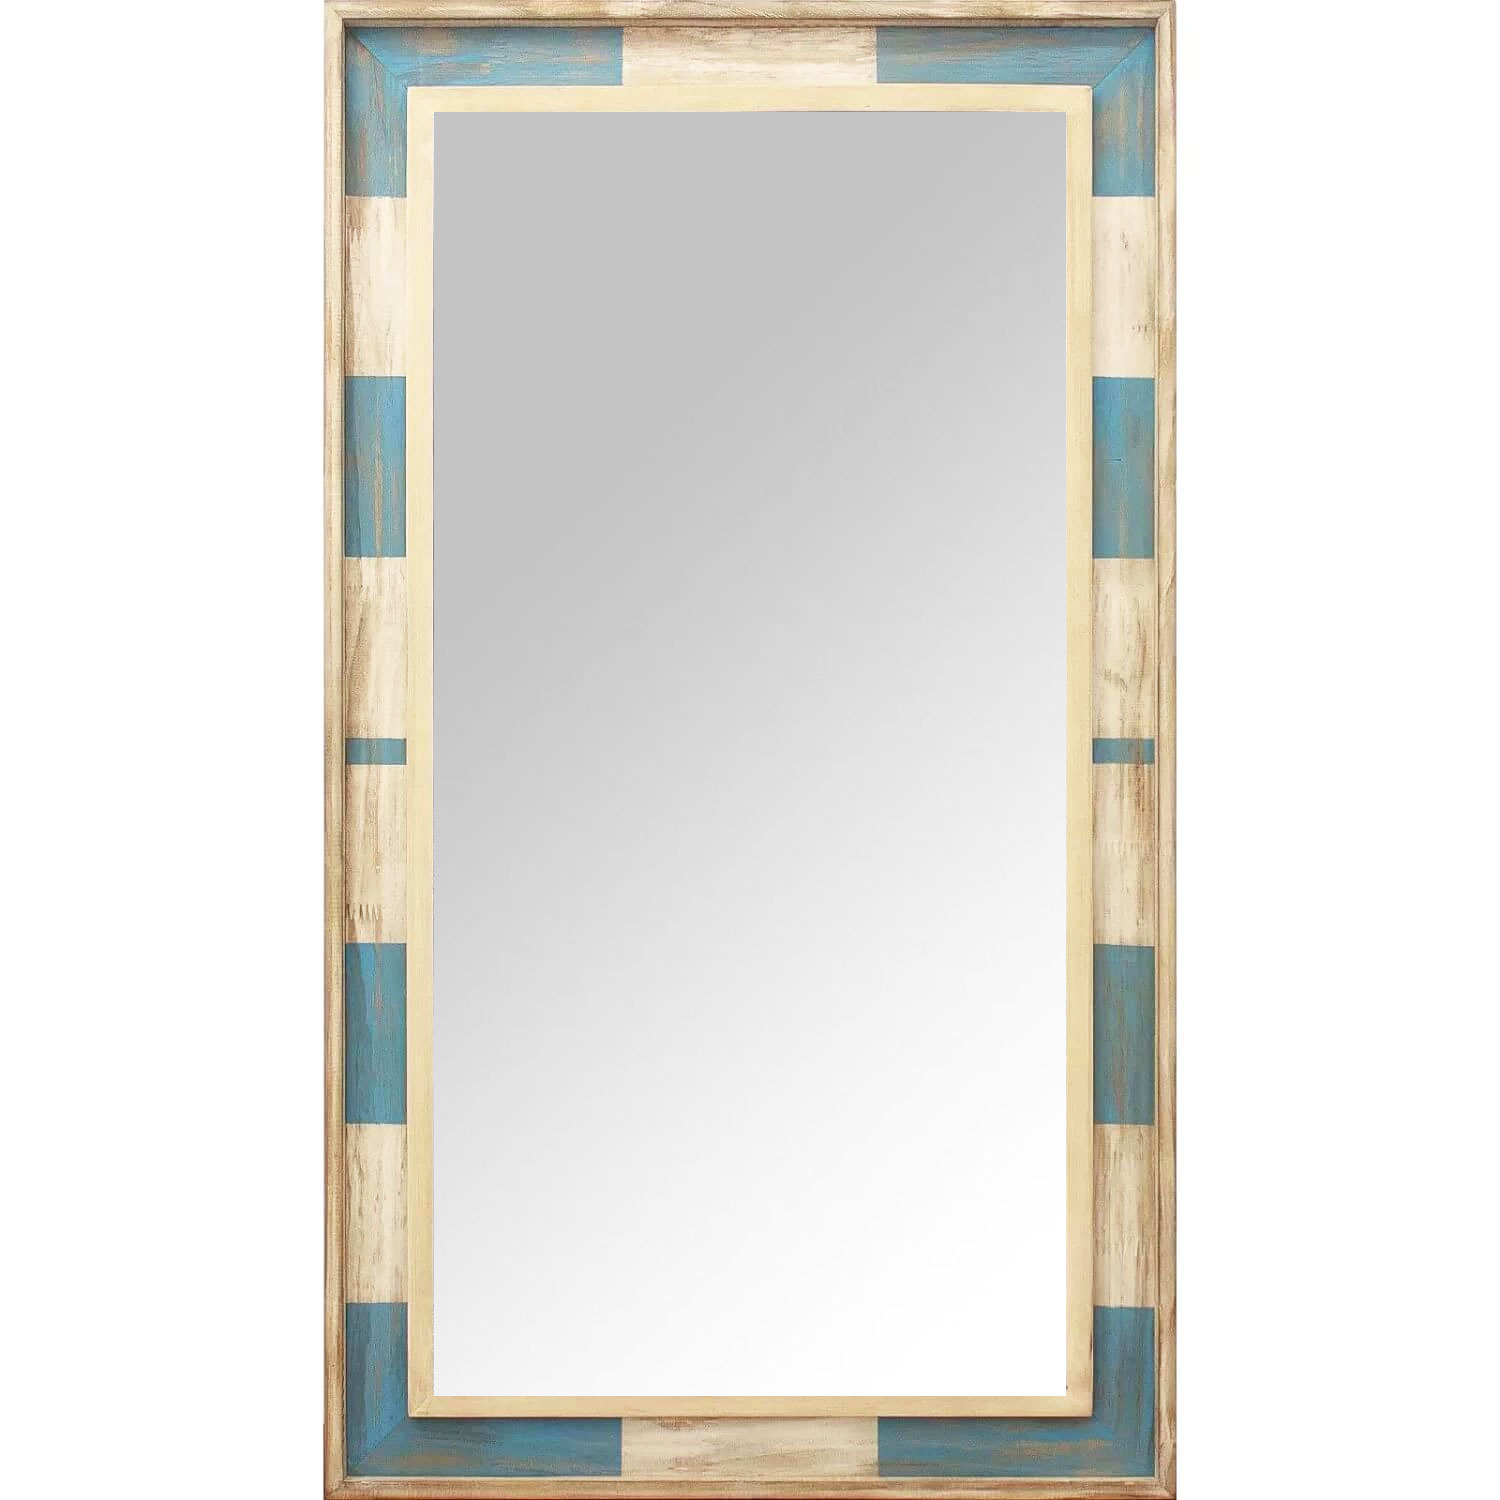  Moldura Rstica Decorativa em Madeira Azul e Branco Patinado para Espelhos - ESP.003 